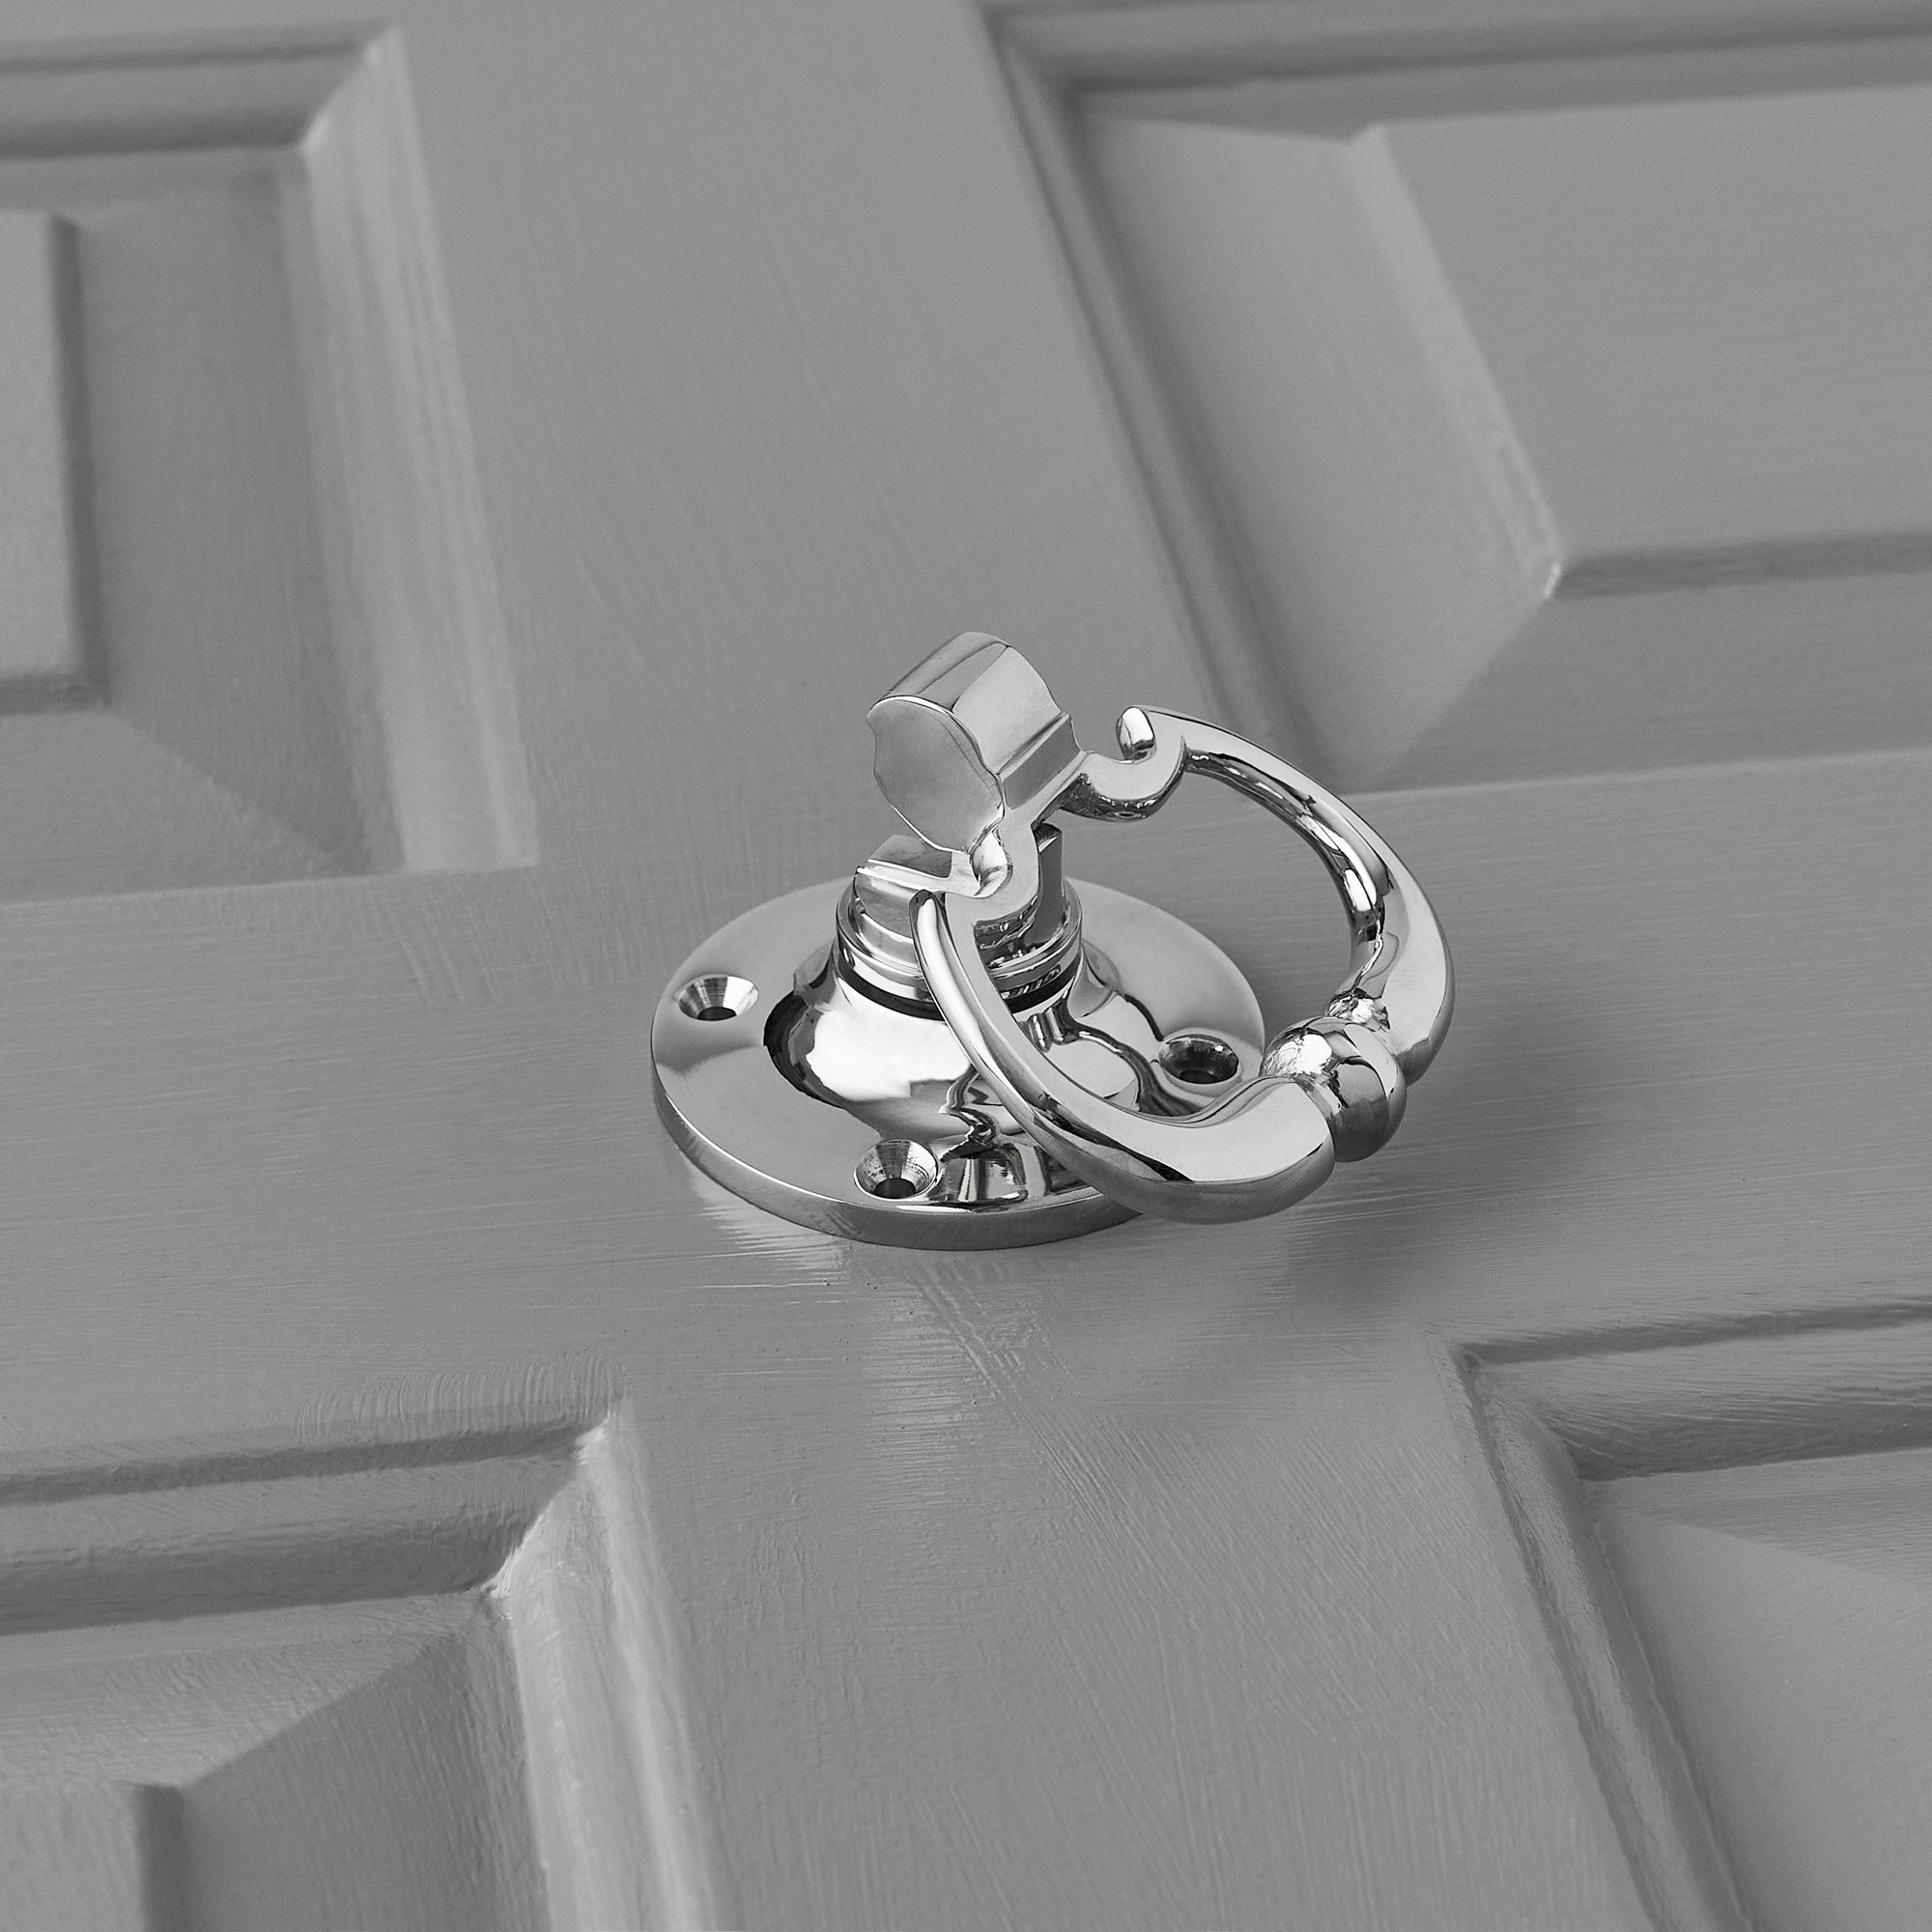 dutch-drop-ring-door-handles-pair-nickel3